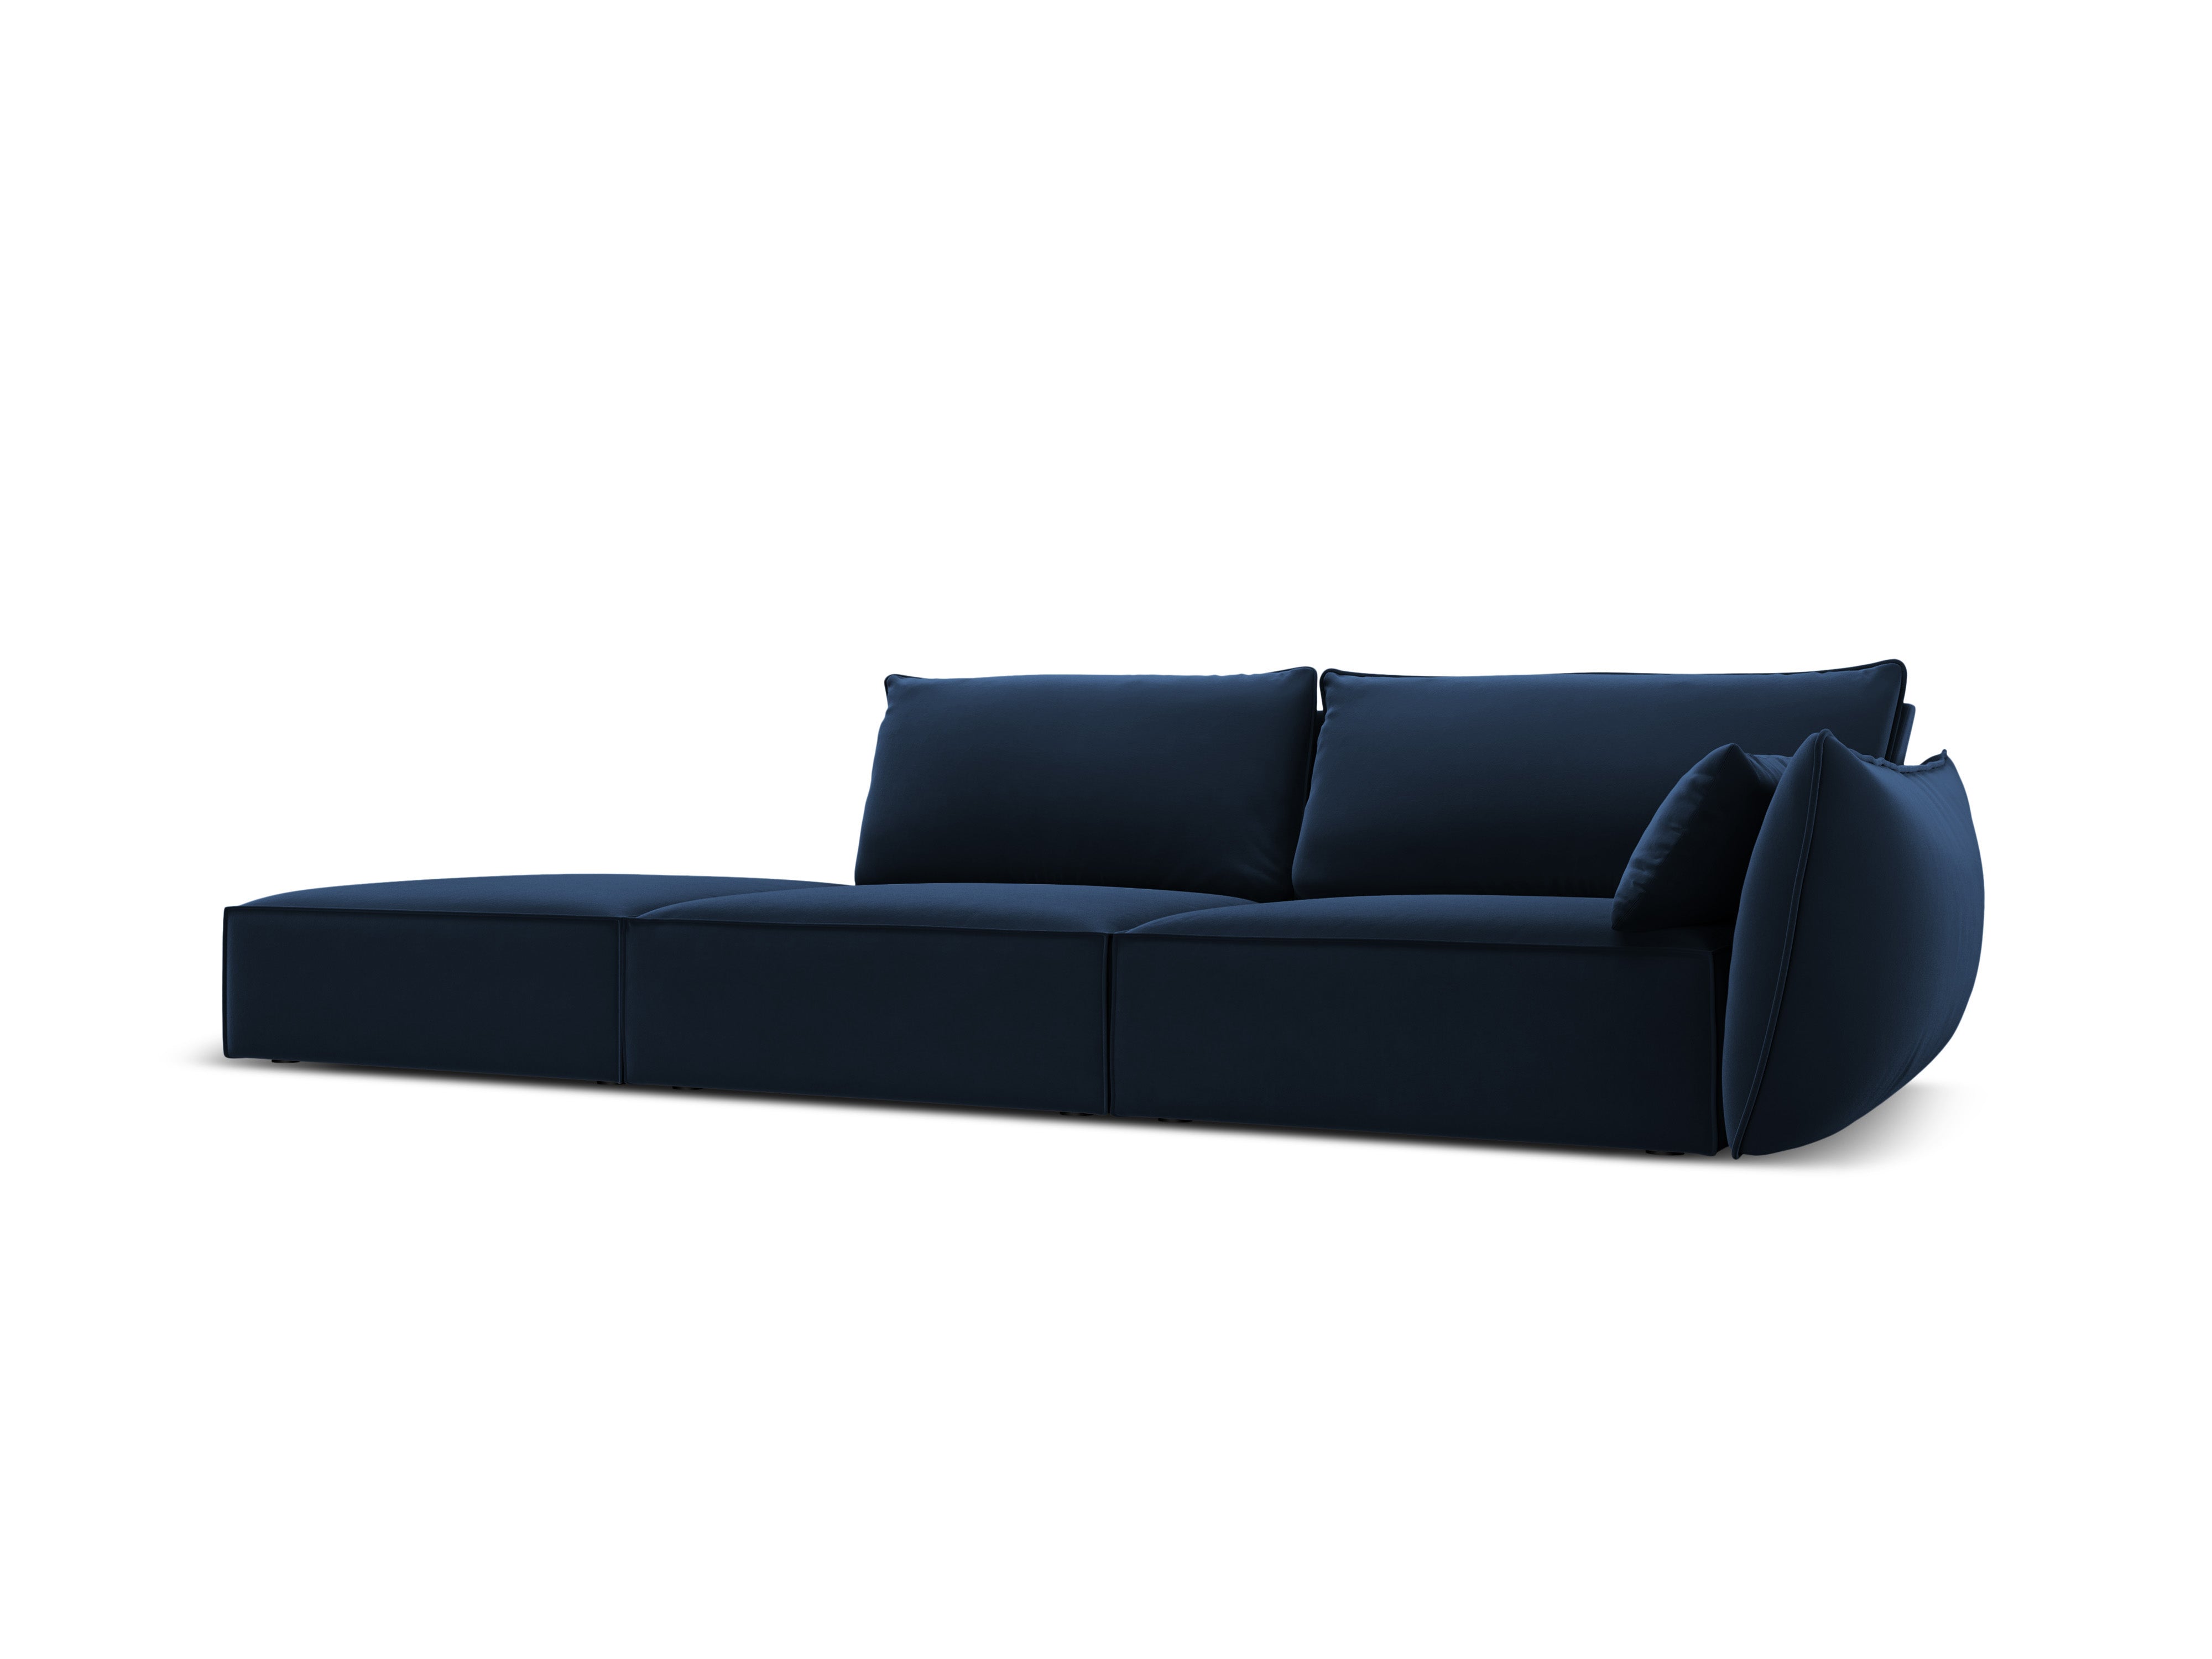 Left Velvet Sofa, "Vanda", 4 Seats, 286x100x85
Made in Europe, Mazzini Sofas, Eye on Design